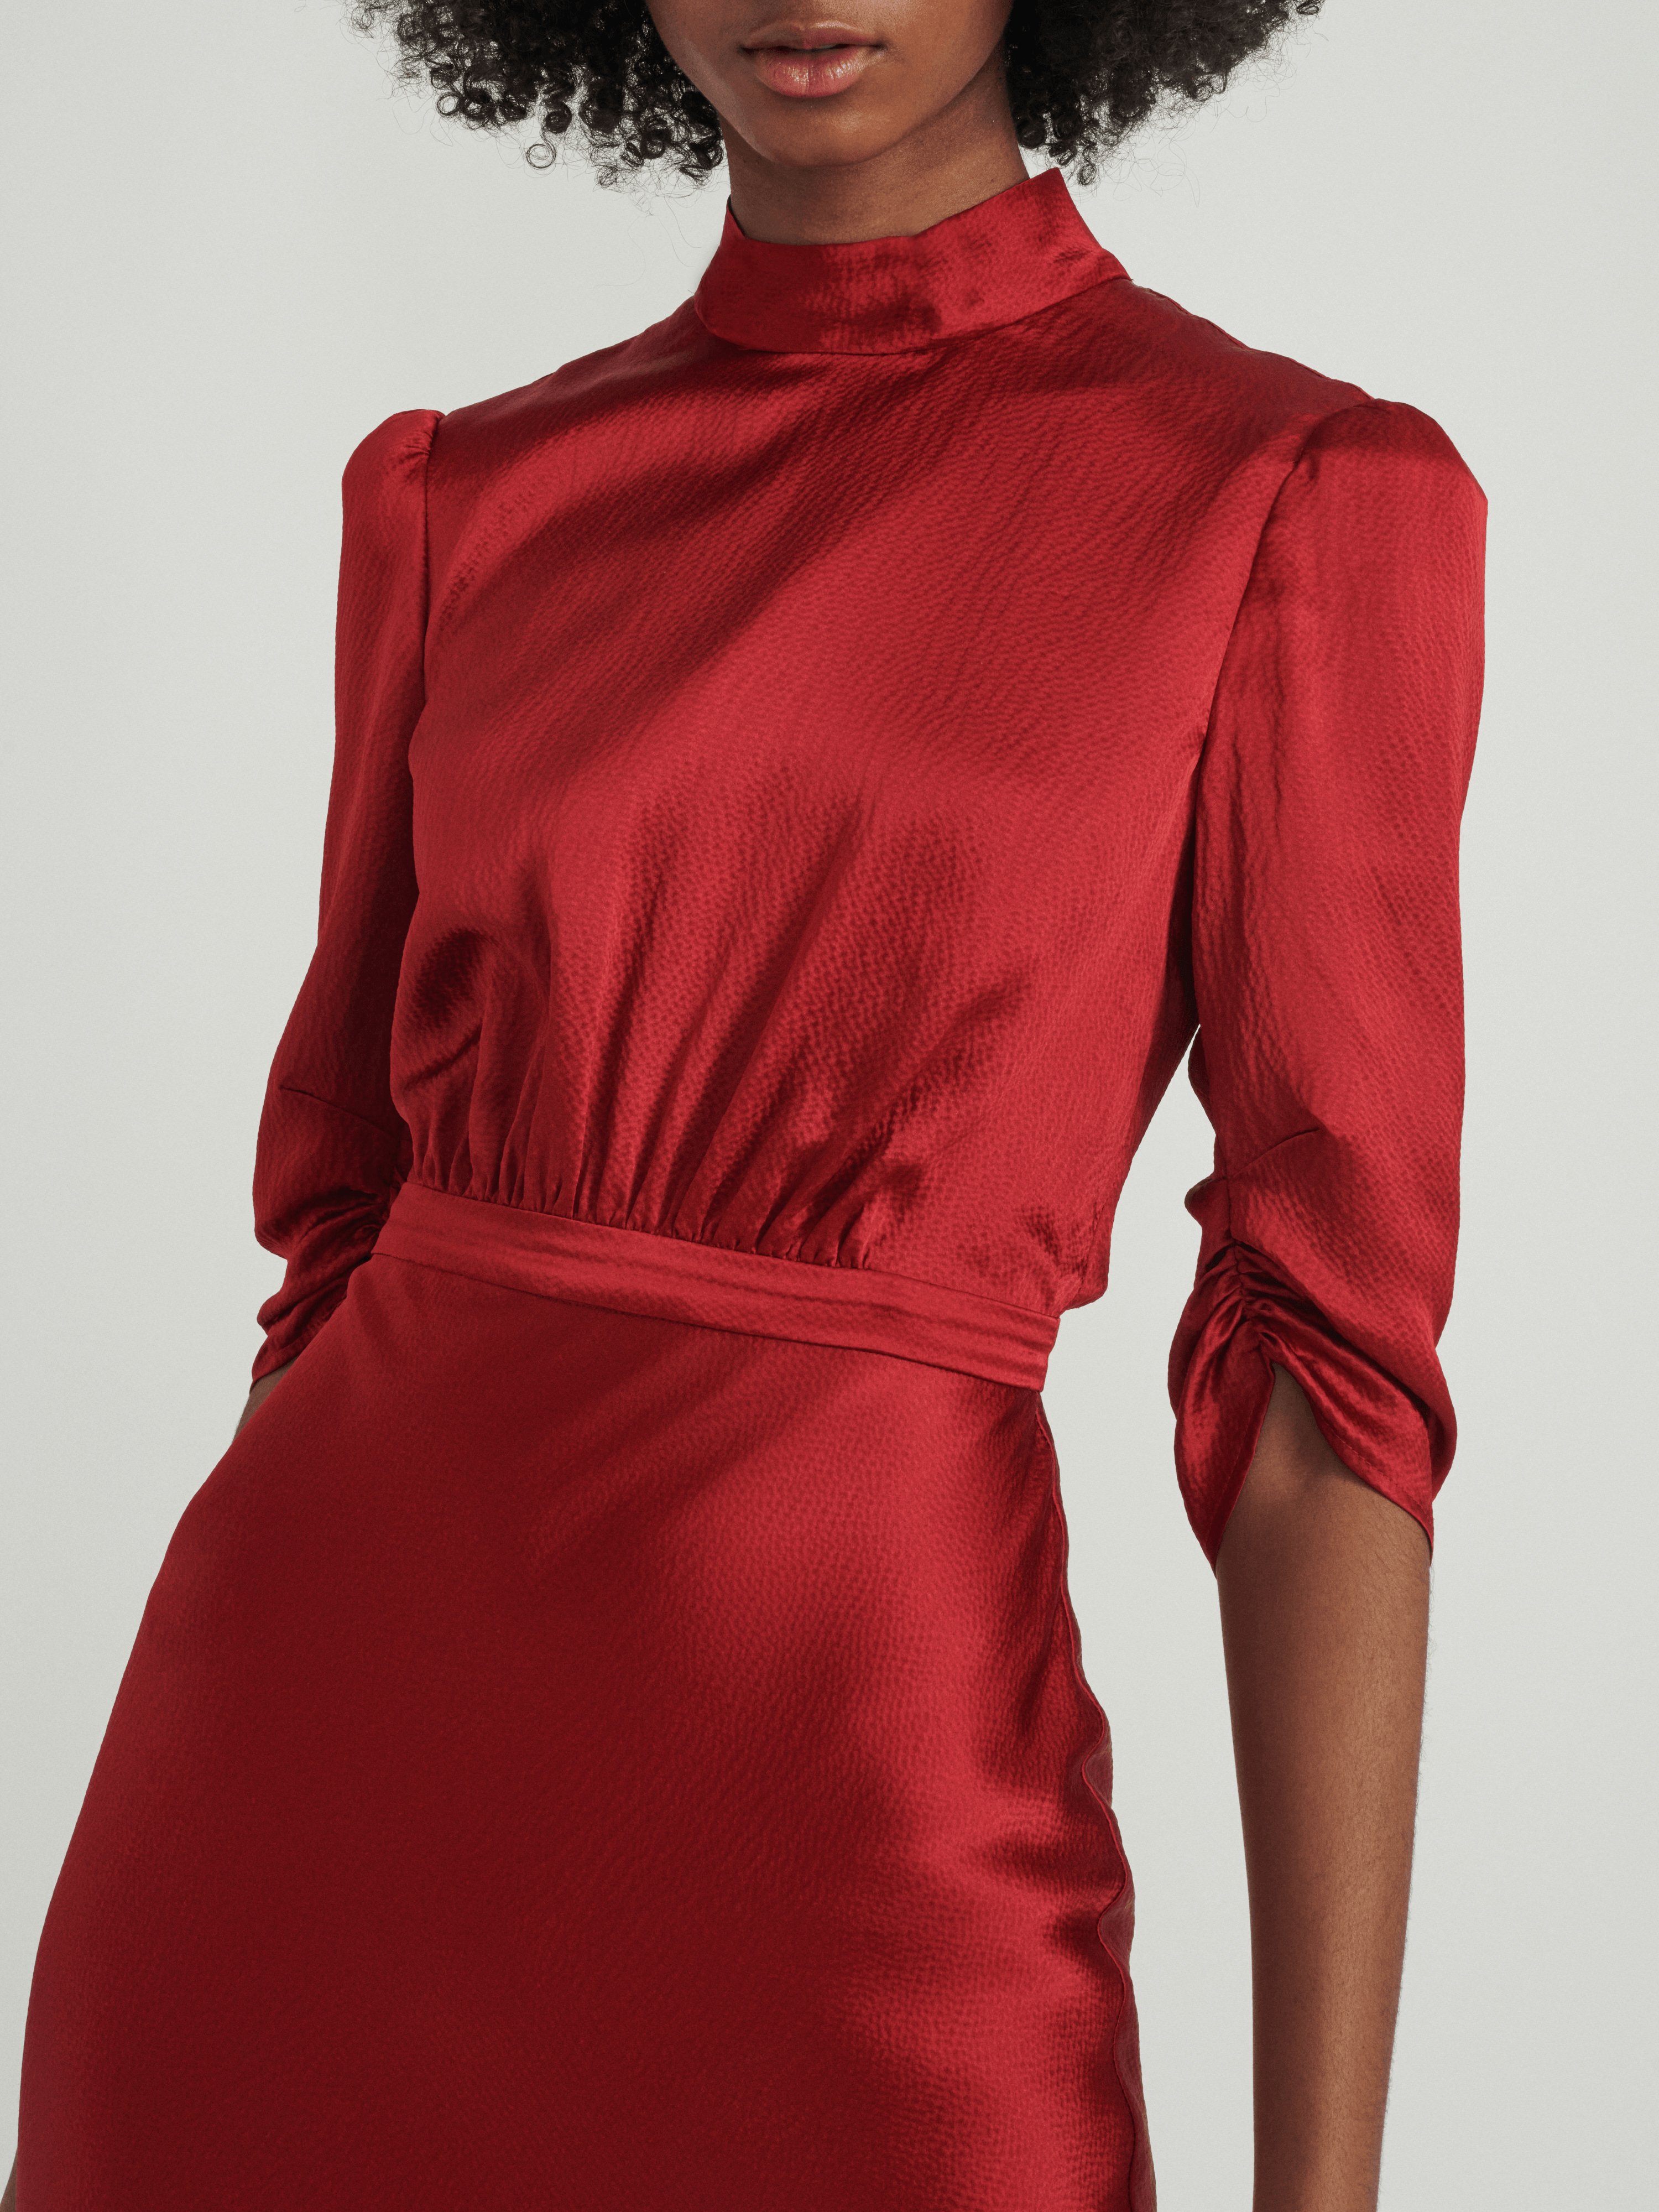 Adele dress in Garnet Red